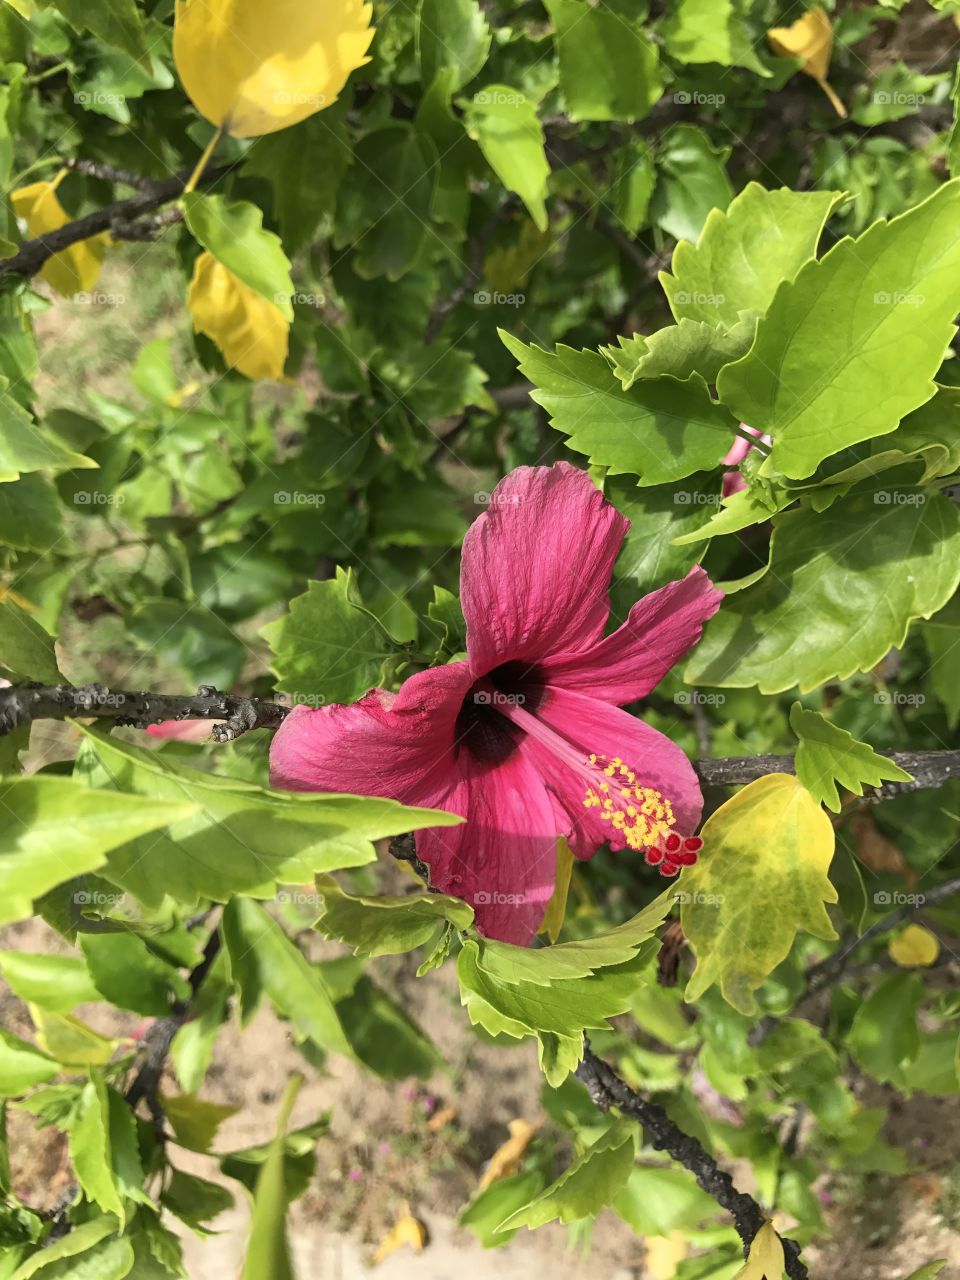 An pink flower 